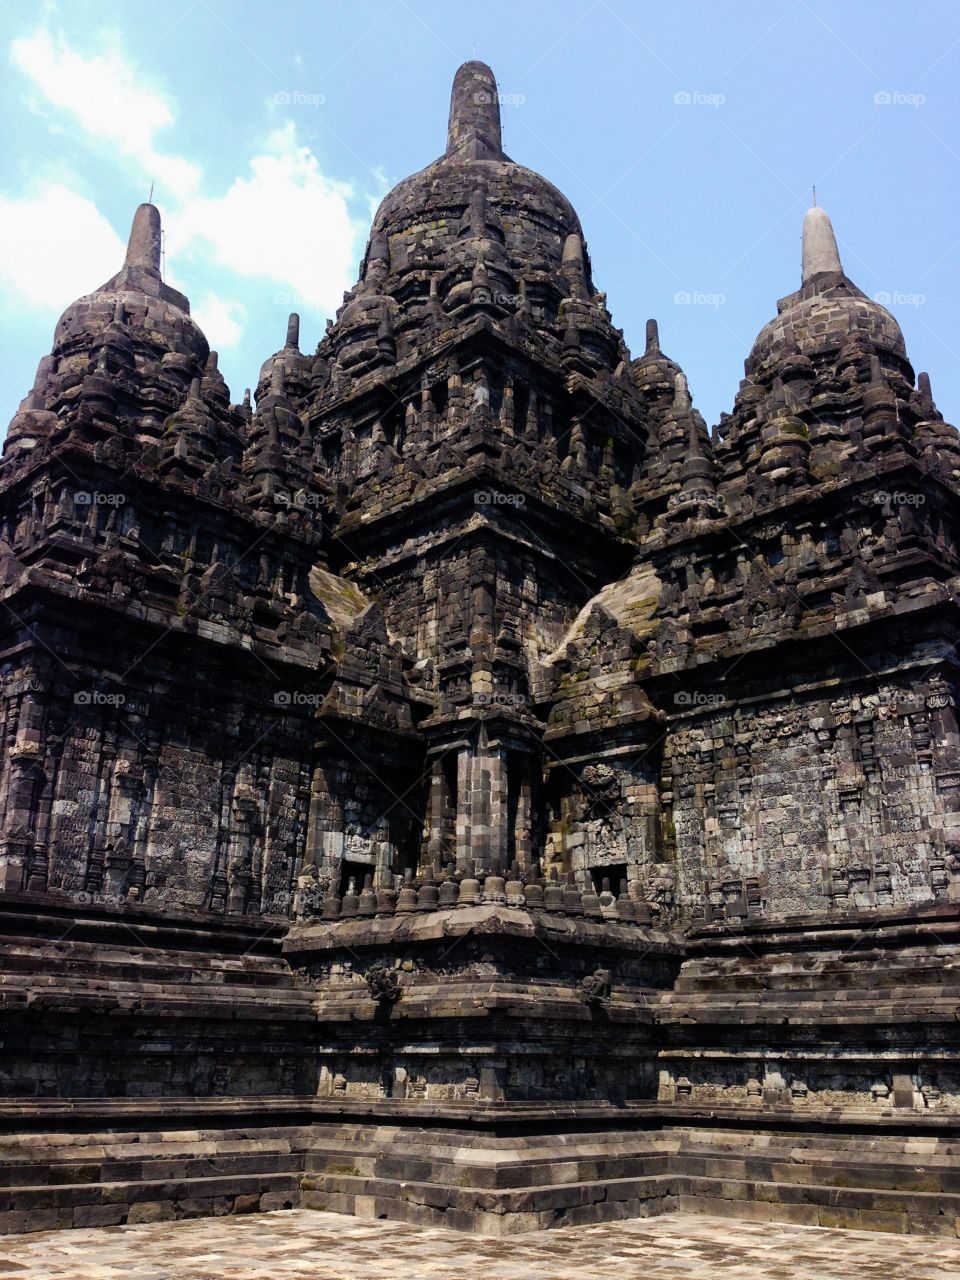 Candi Sewu. Temple in Prambanan, Indonesia